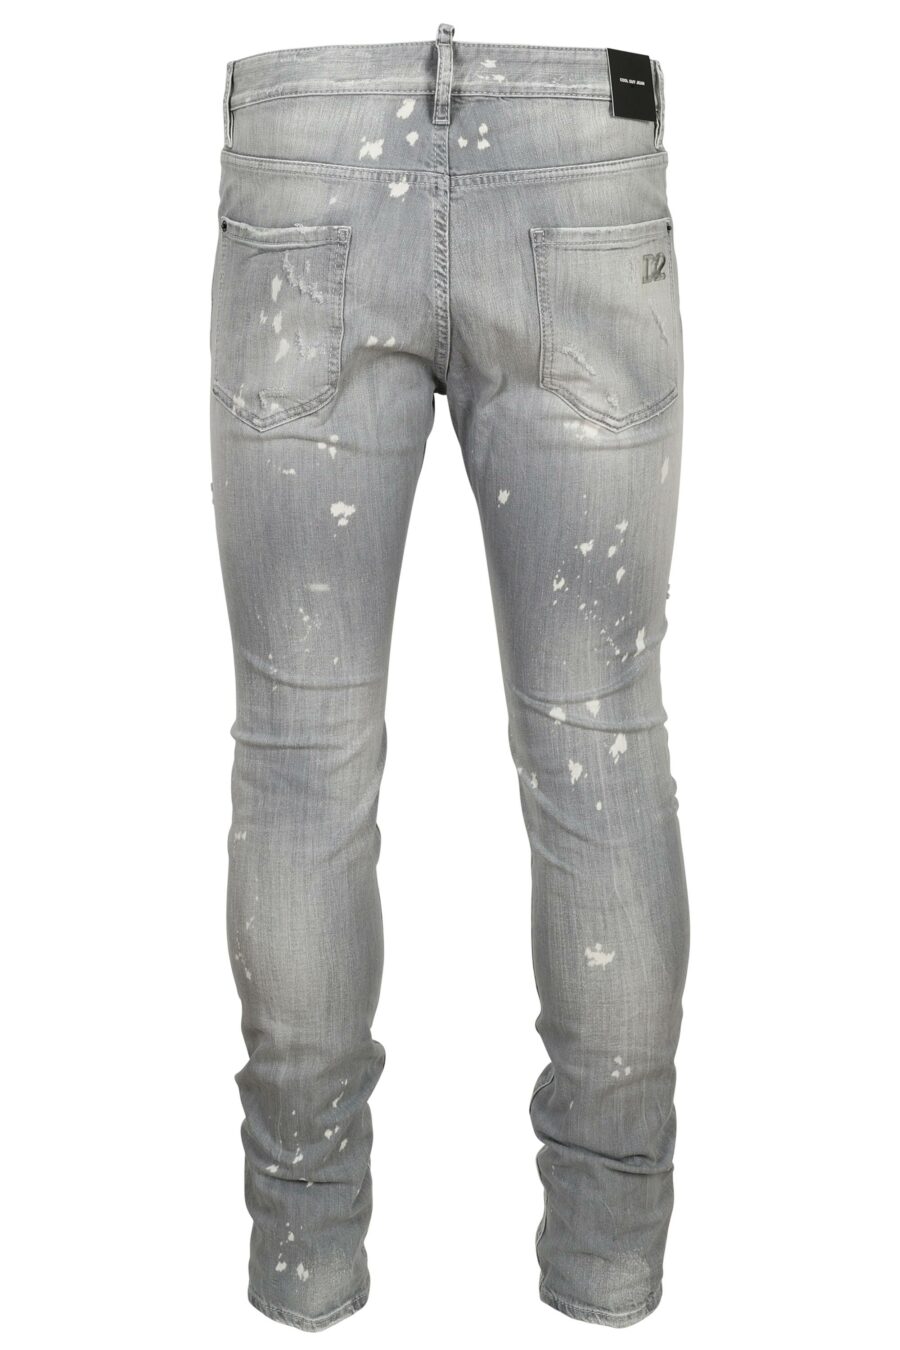 Graue "cool guy jean"-Hose mit weißer Farbe und Rissen - 8054148474218 1